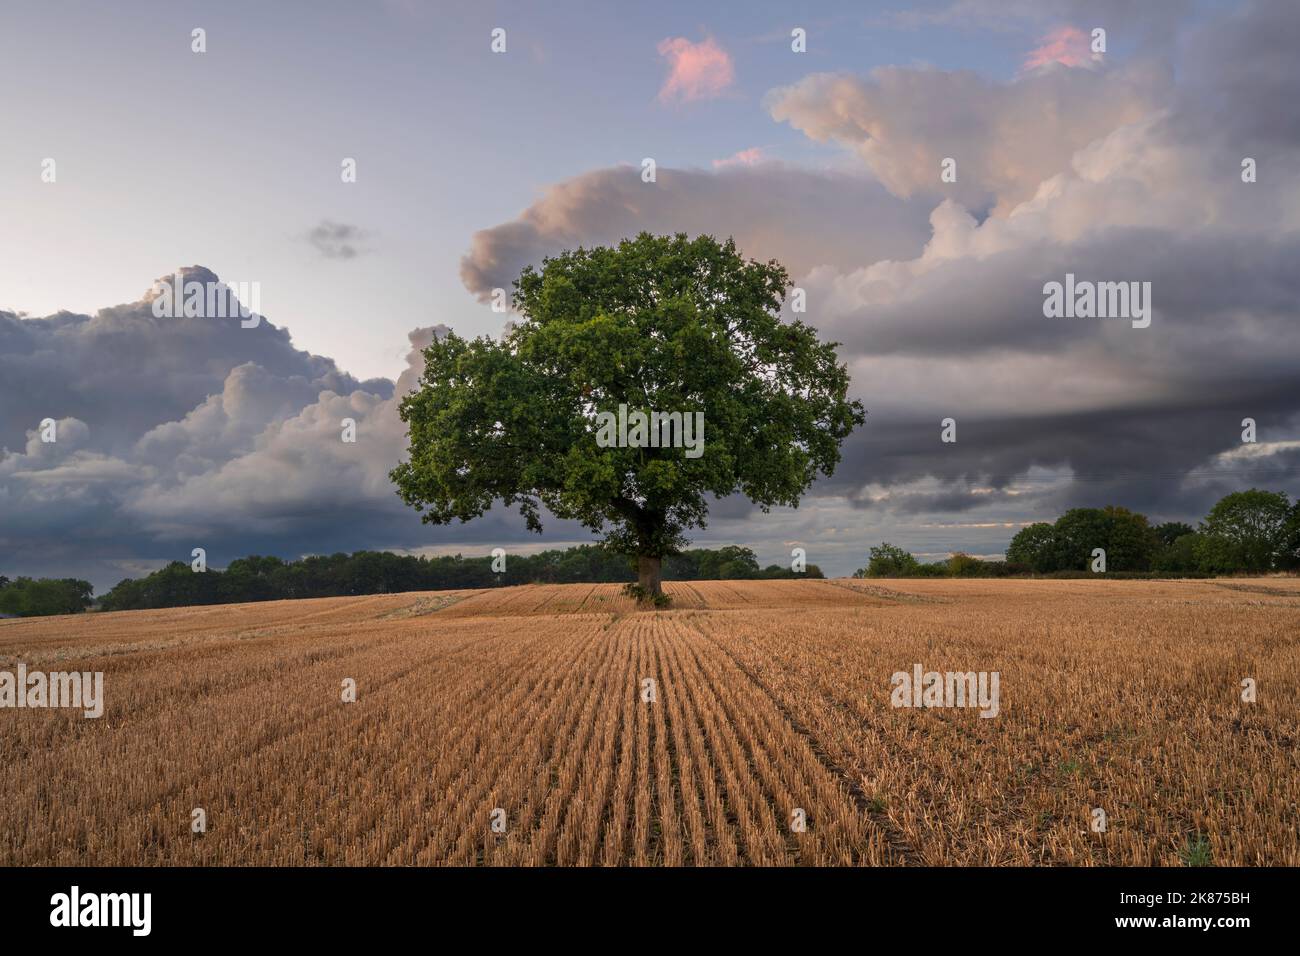 Arbre solitaire dans un champ labouré avec ciel spectaculaire, Congleton, Cheshire, Angleterre, Royaume-Uni, Europe Banque D'Images